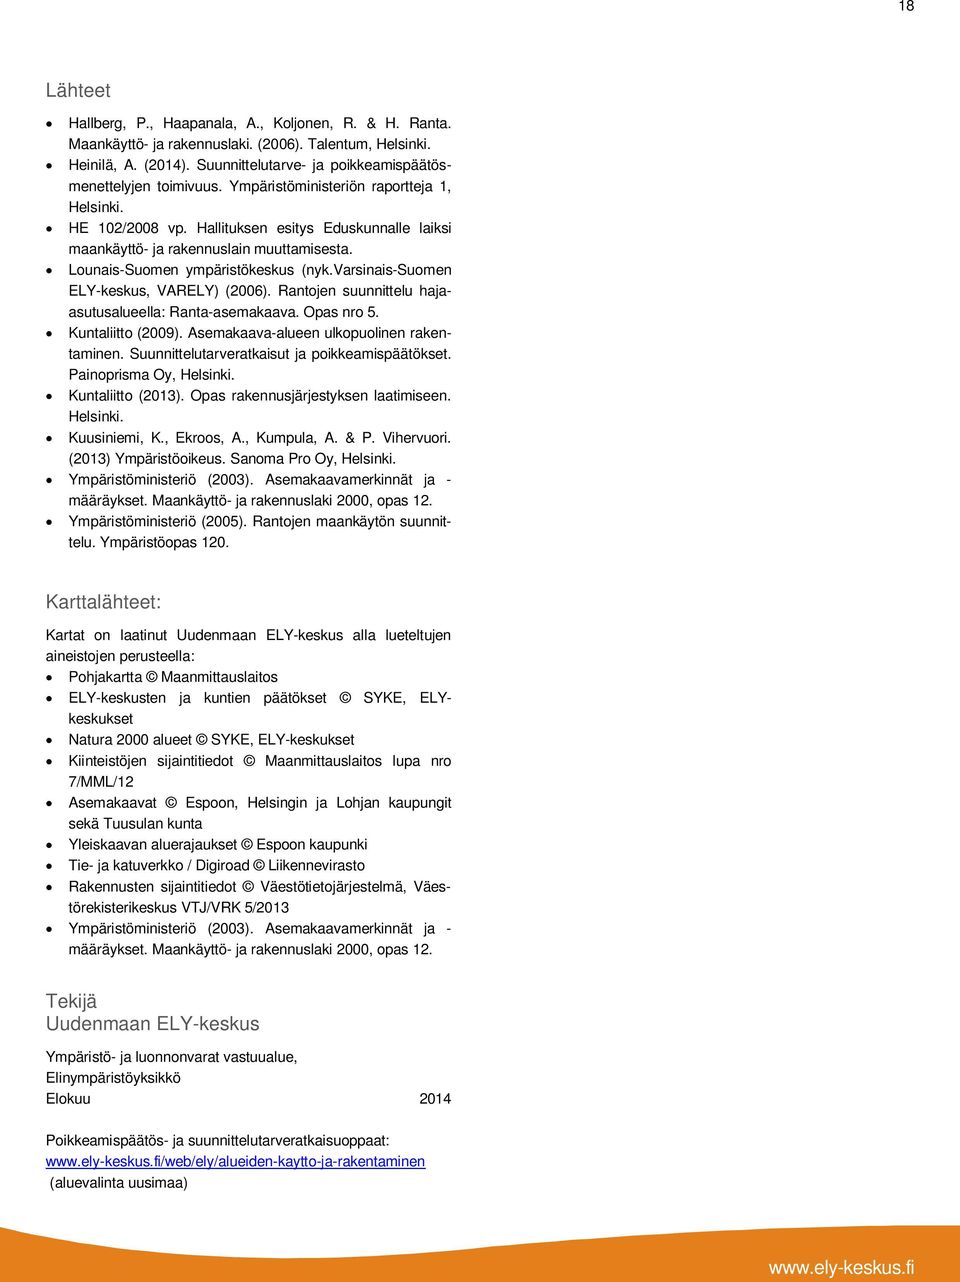 Hallituksen esitys Eduskunnalle laiksi maankäyttö- ja rakennuslain muuttamisesta. Lounais-Suomen ympäristökeskus (nyk.varsinais-suomen ELY-keskus, VARELY) (2006).